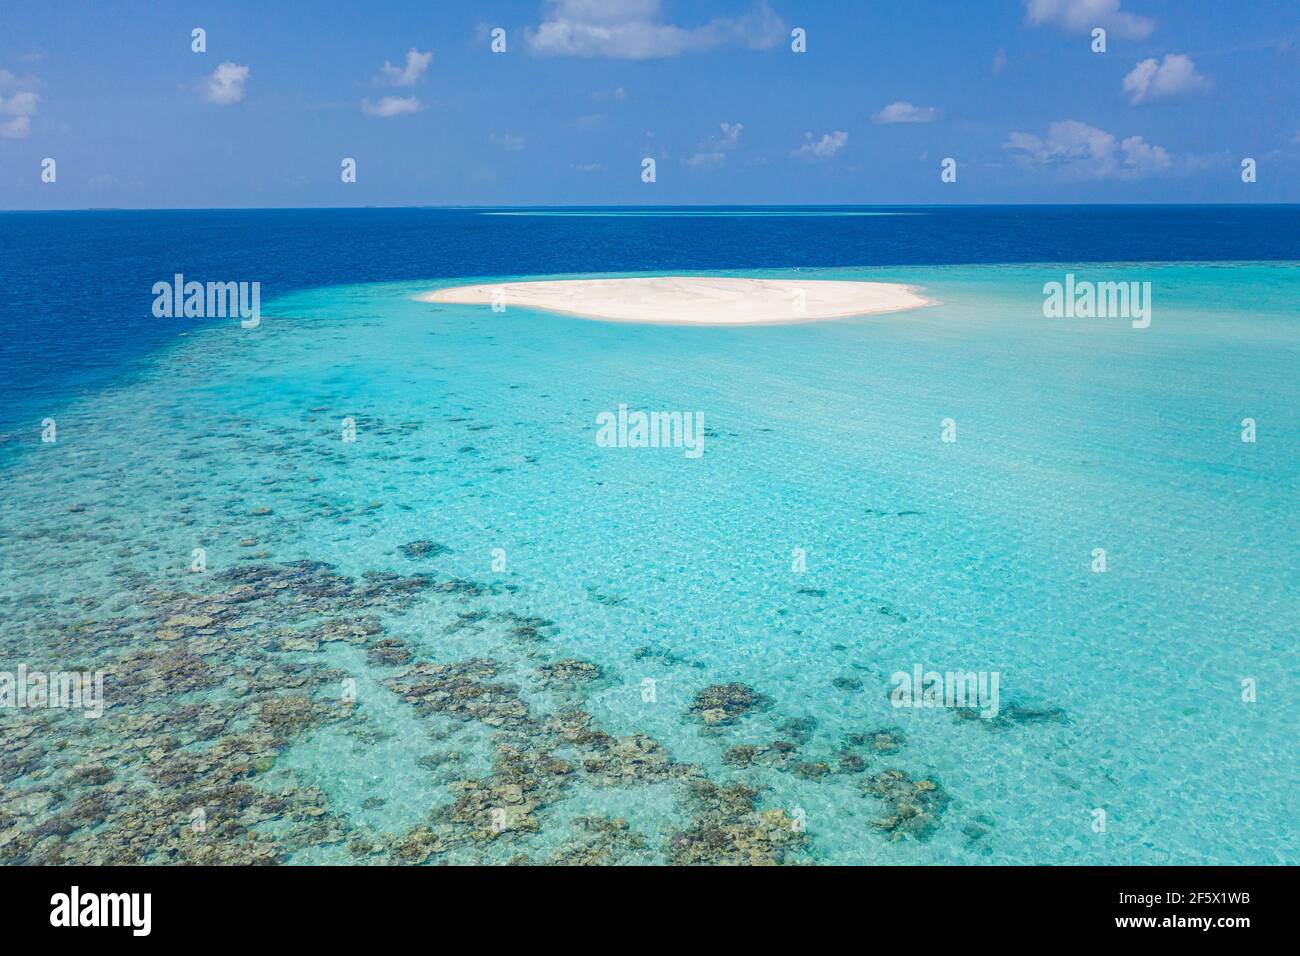 Schönes Luftbild von exotischer Sandbank, idyllischer tropischer Strandlandschaft, blauen Wellen und weißem Sand. Romantische und entspannende Sommerstimmung Stockfoto